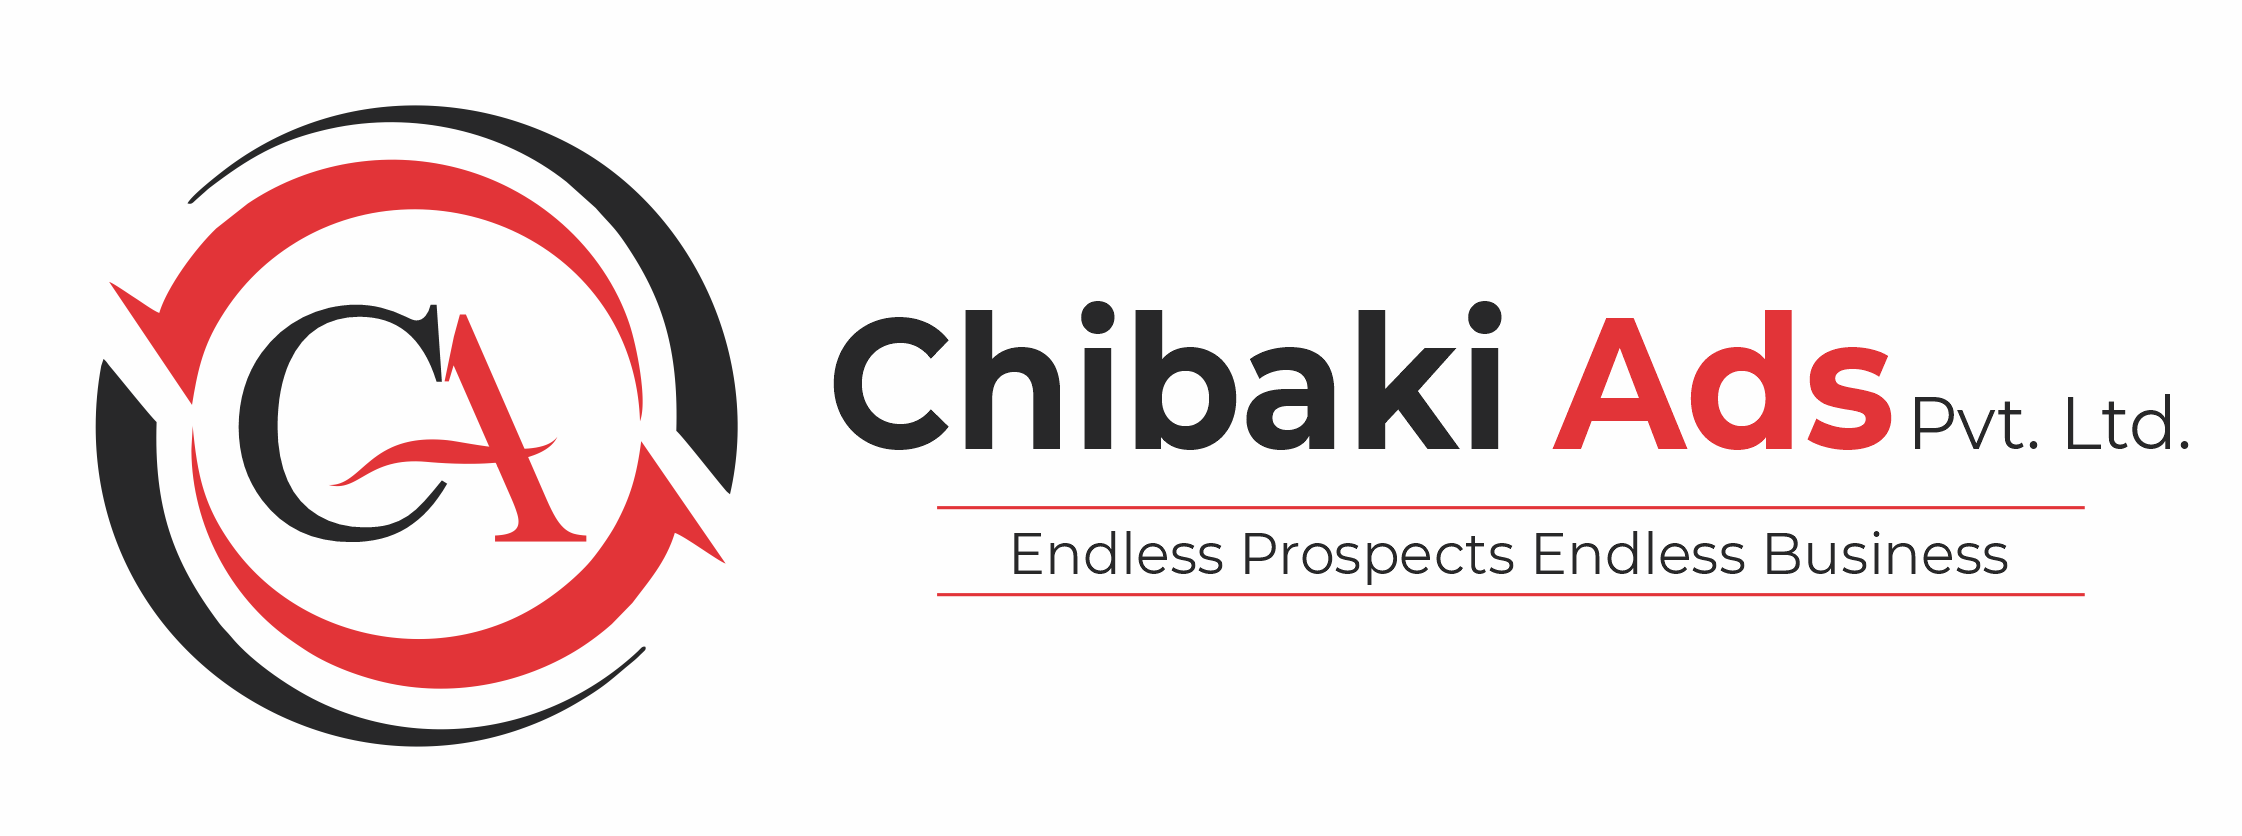 Chibaki Ads Pvt Ltd.